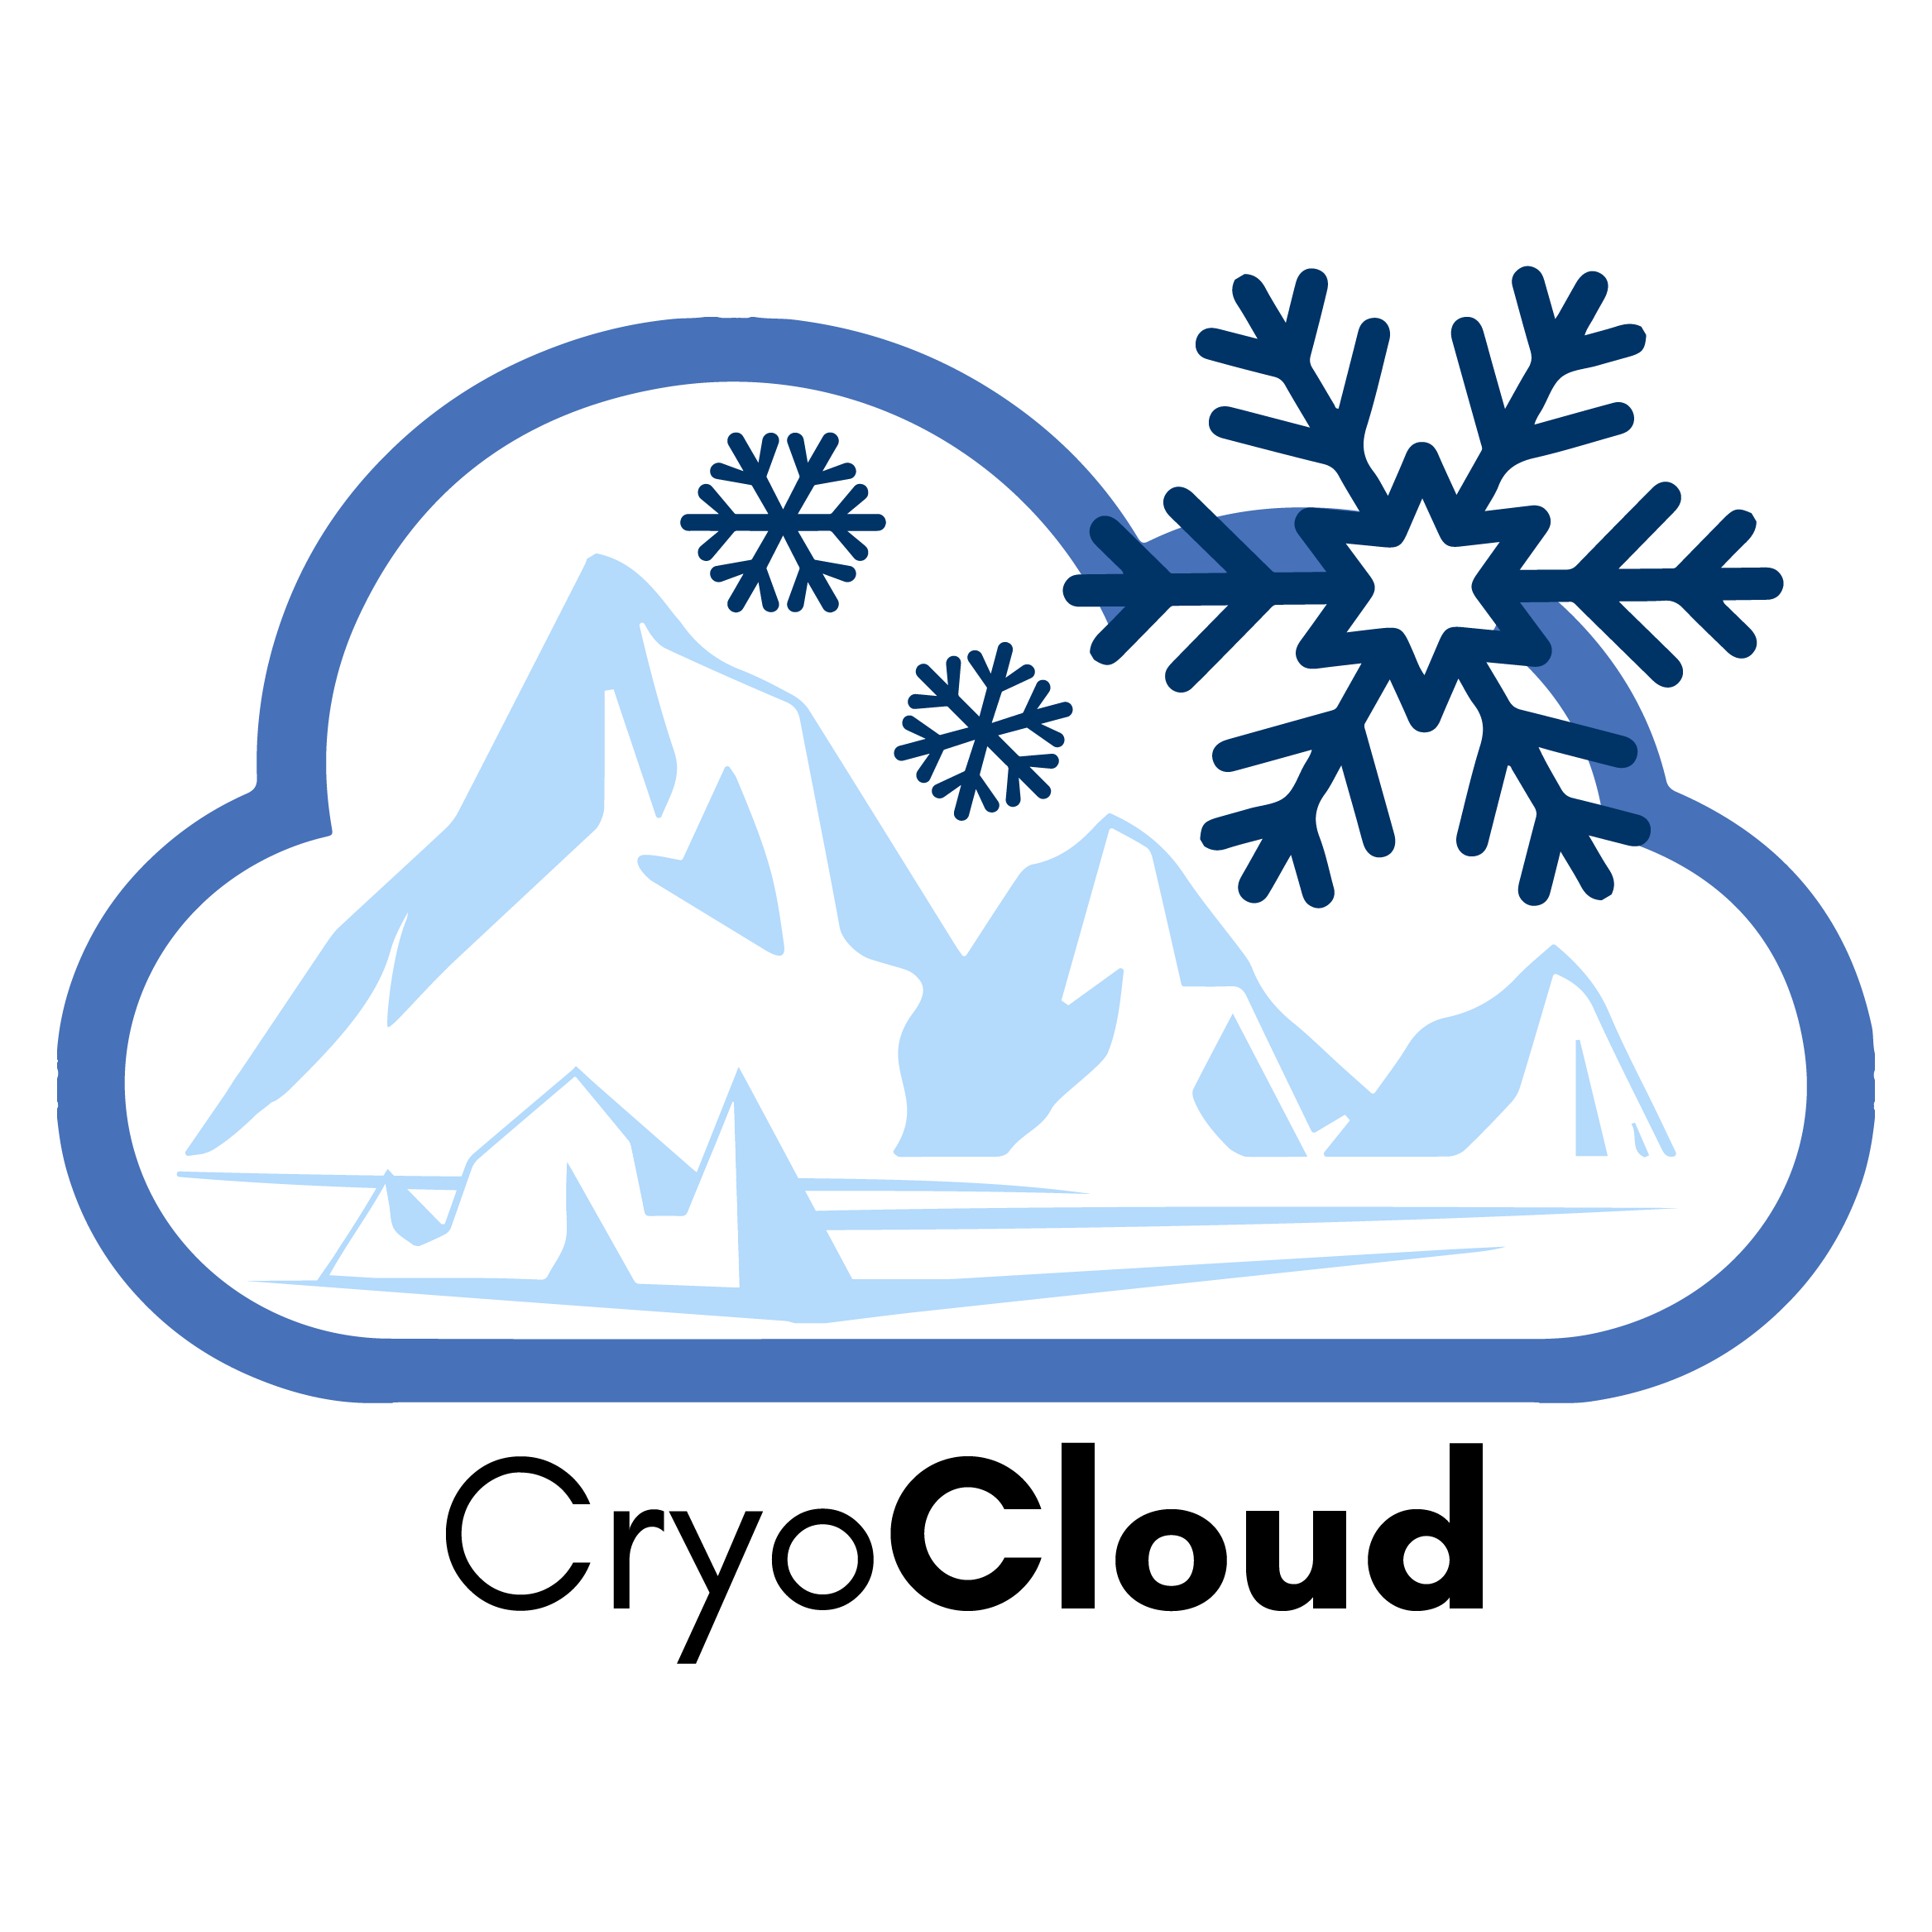 Cryo in the Cloud logo